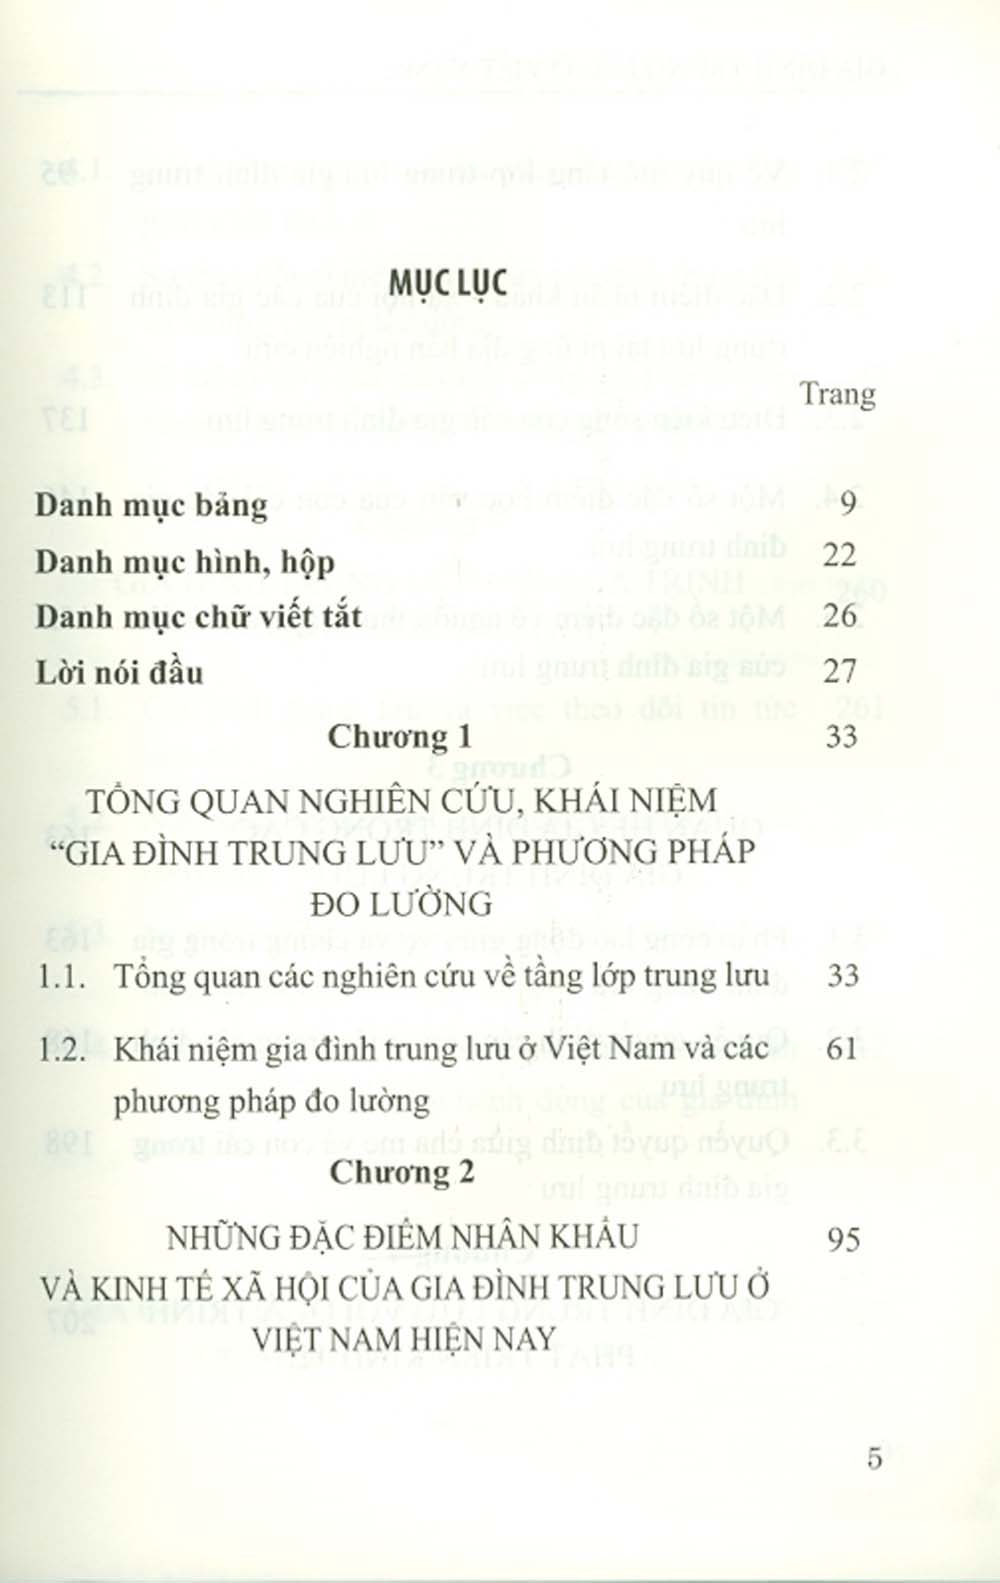 Gia Đình Trung Lưu Ở Việt Nam Với Các Quá Trình Phát Triển Kinh Tế - Xã Hội - Văn Hóa